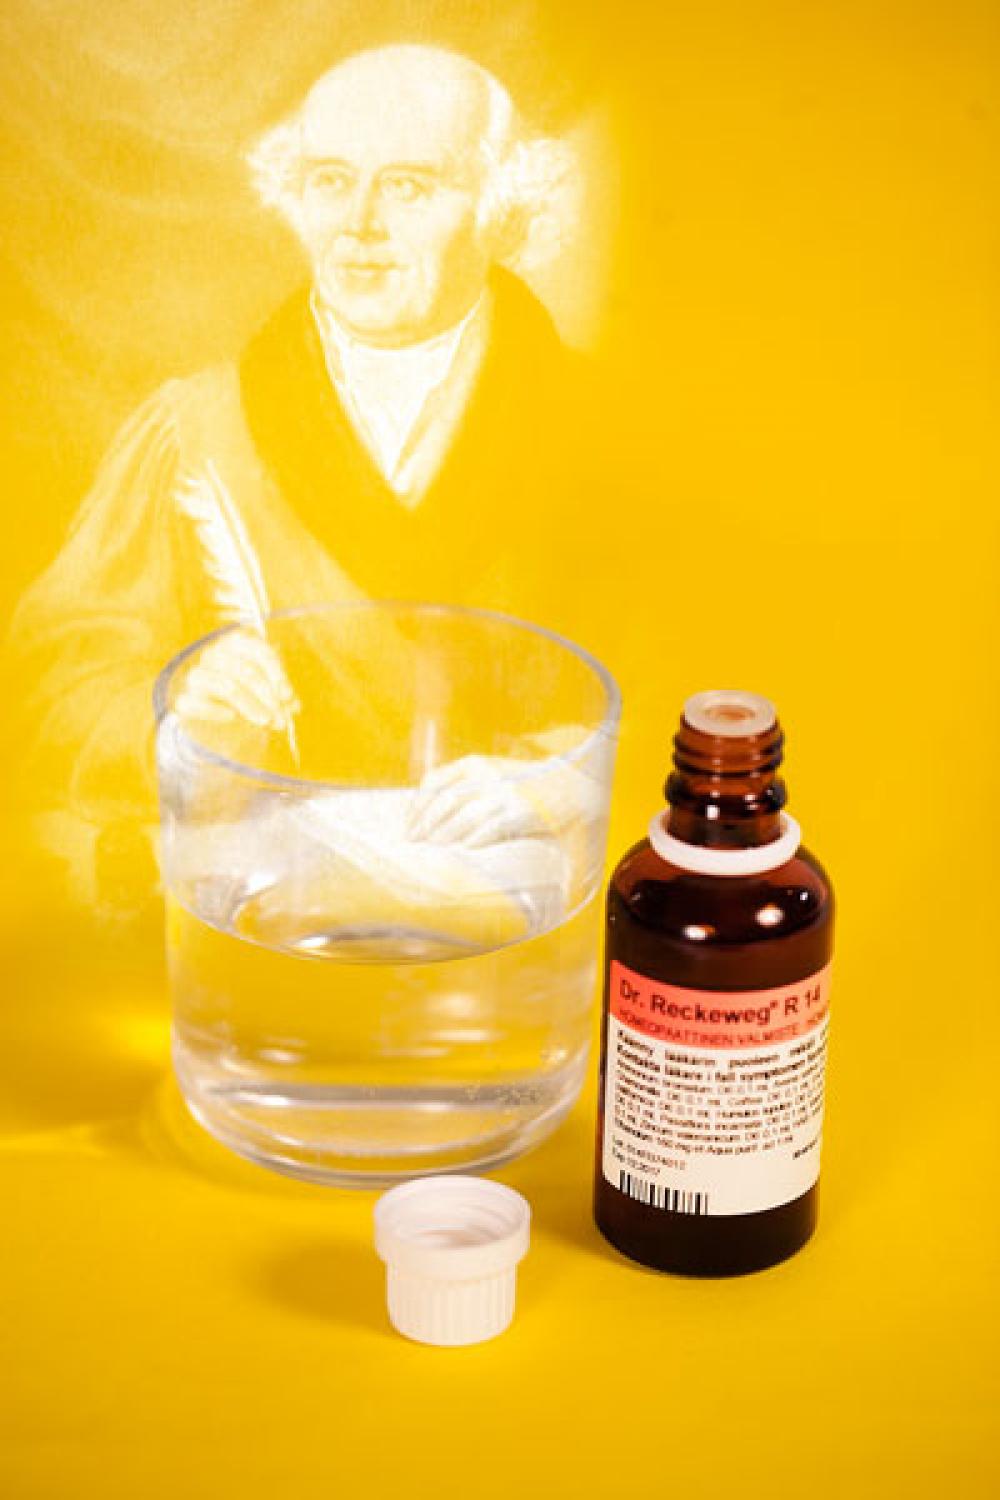 Homeopatian isä ja homeopaattinen tuote.